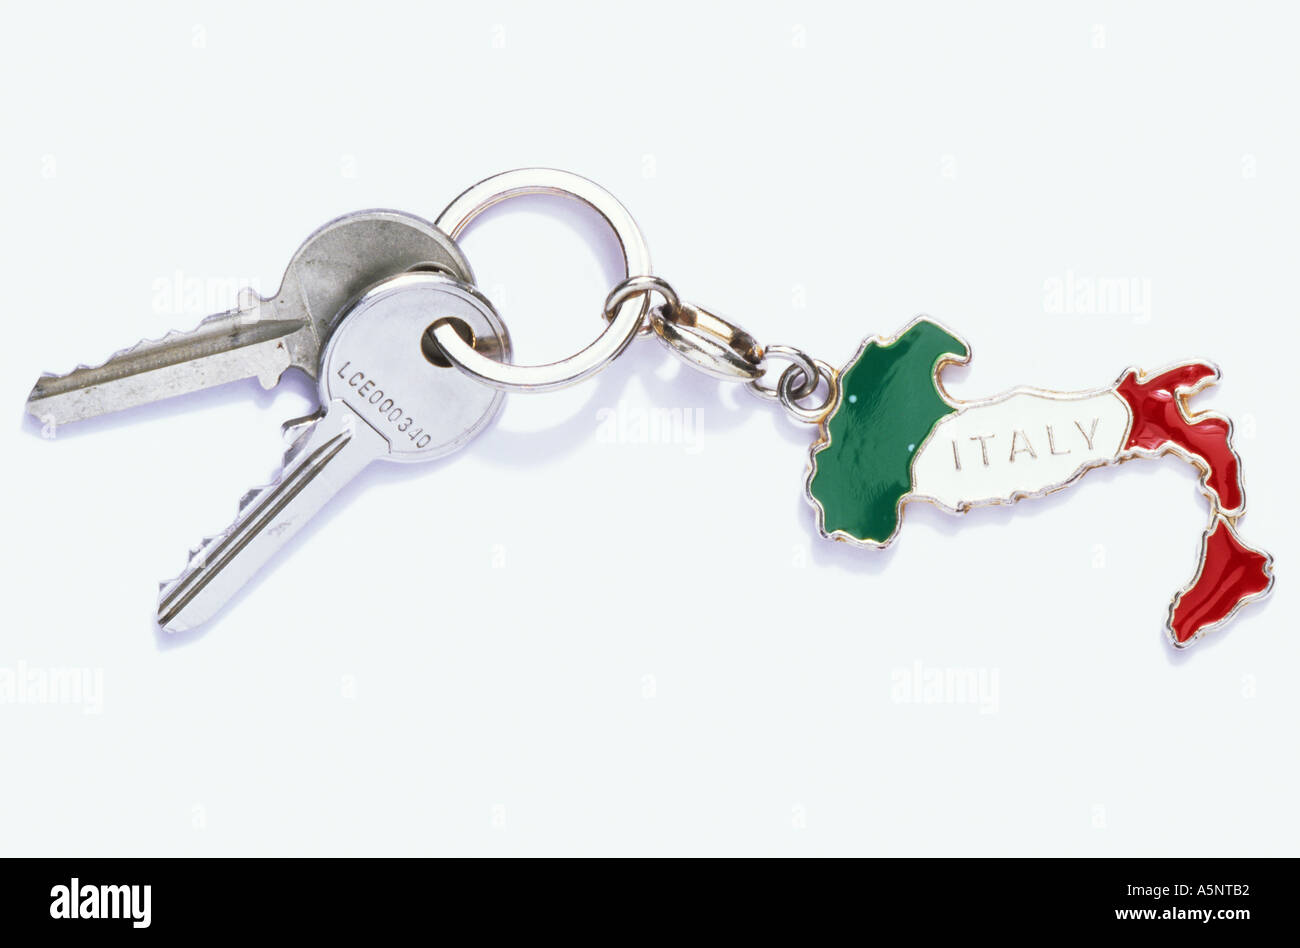 Keys on an Italy key ring Stock Photo